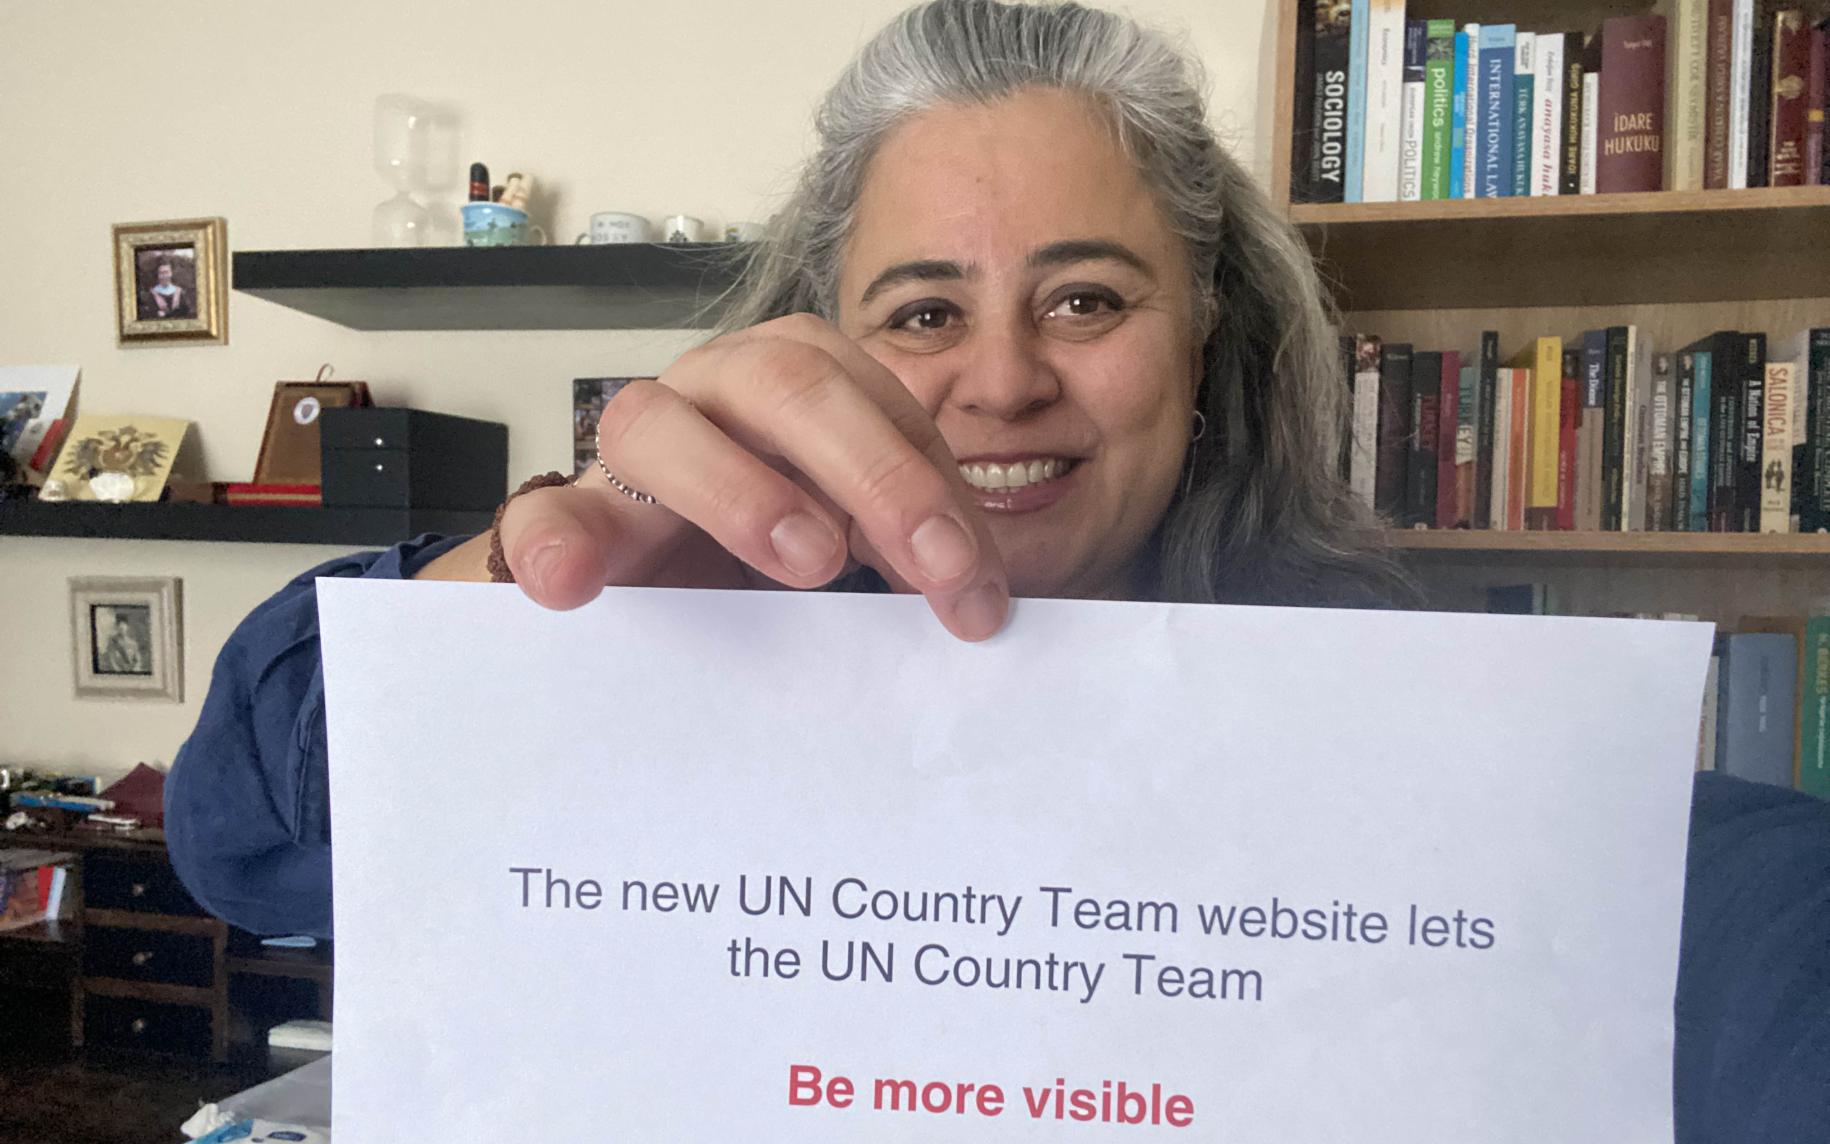 Una mujer sonríe alegremente a la cámara mientras sostiene un letrero que dice: "Los nuevos sitios web del equipo de país de la ONU permiten que el equipo de país de la ONU sea MÁS VISIBLE".